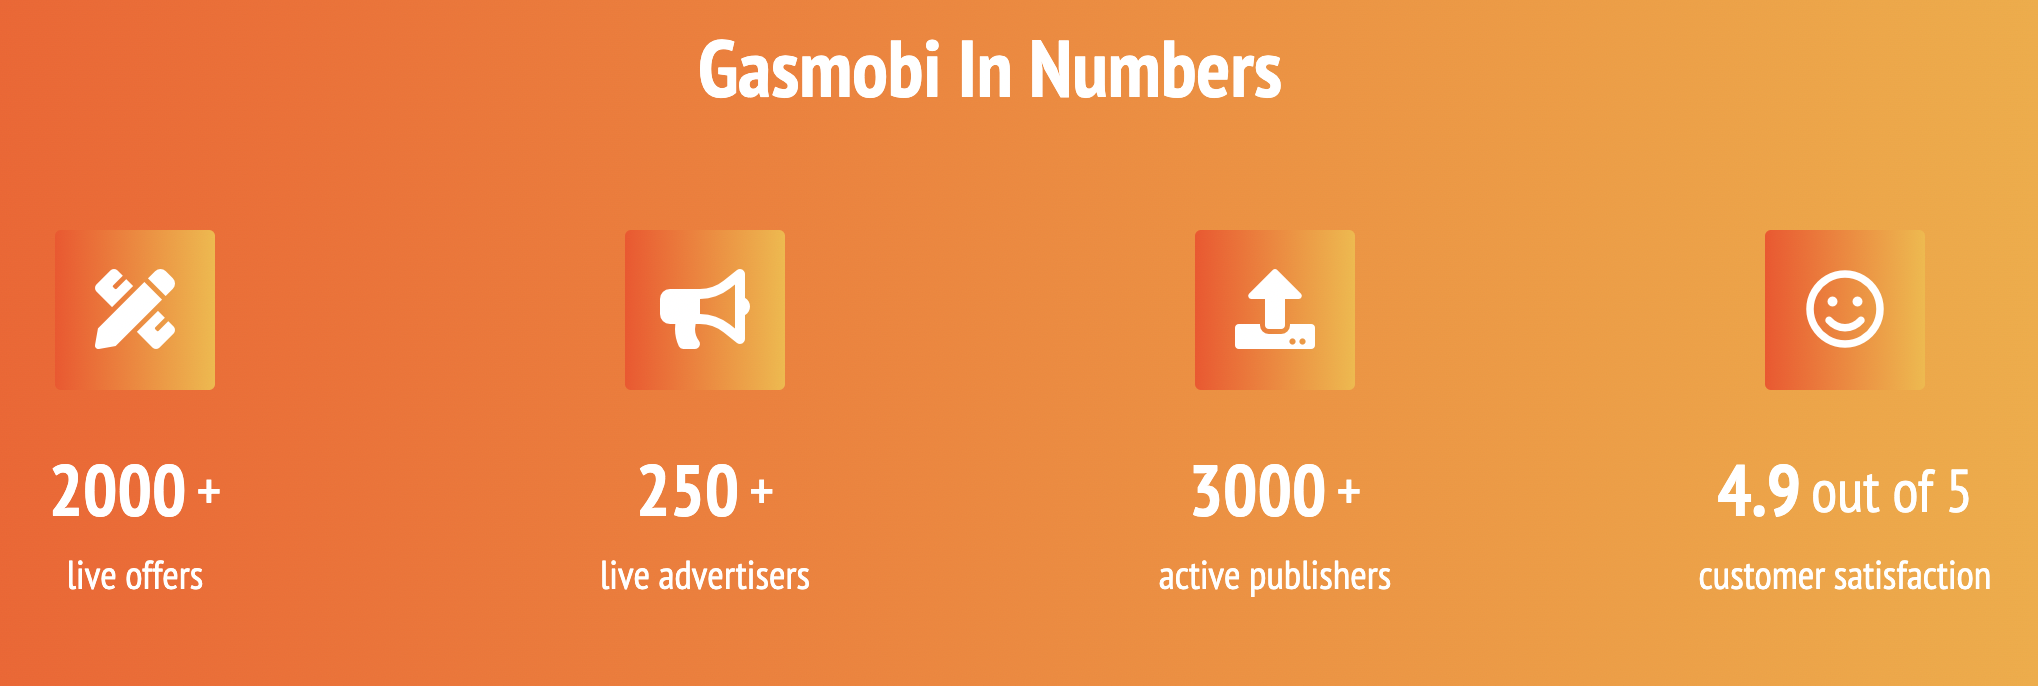 Gasmobi Advertisers & Publishers